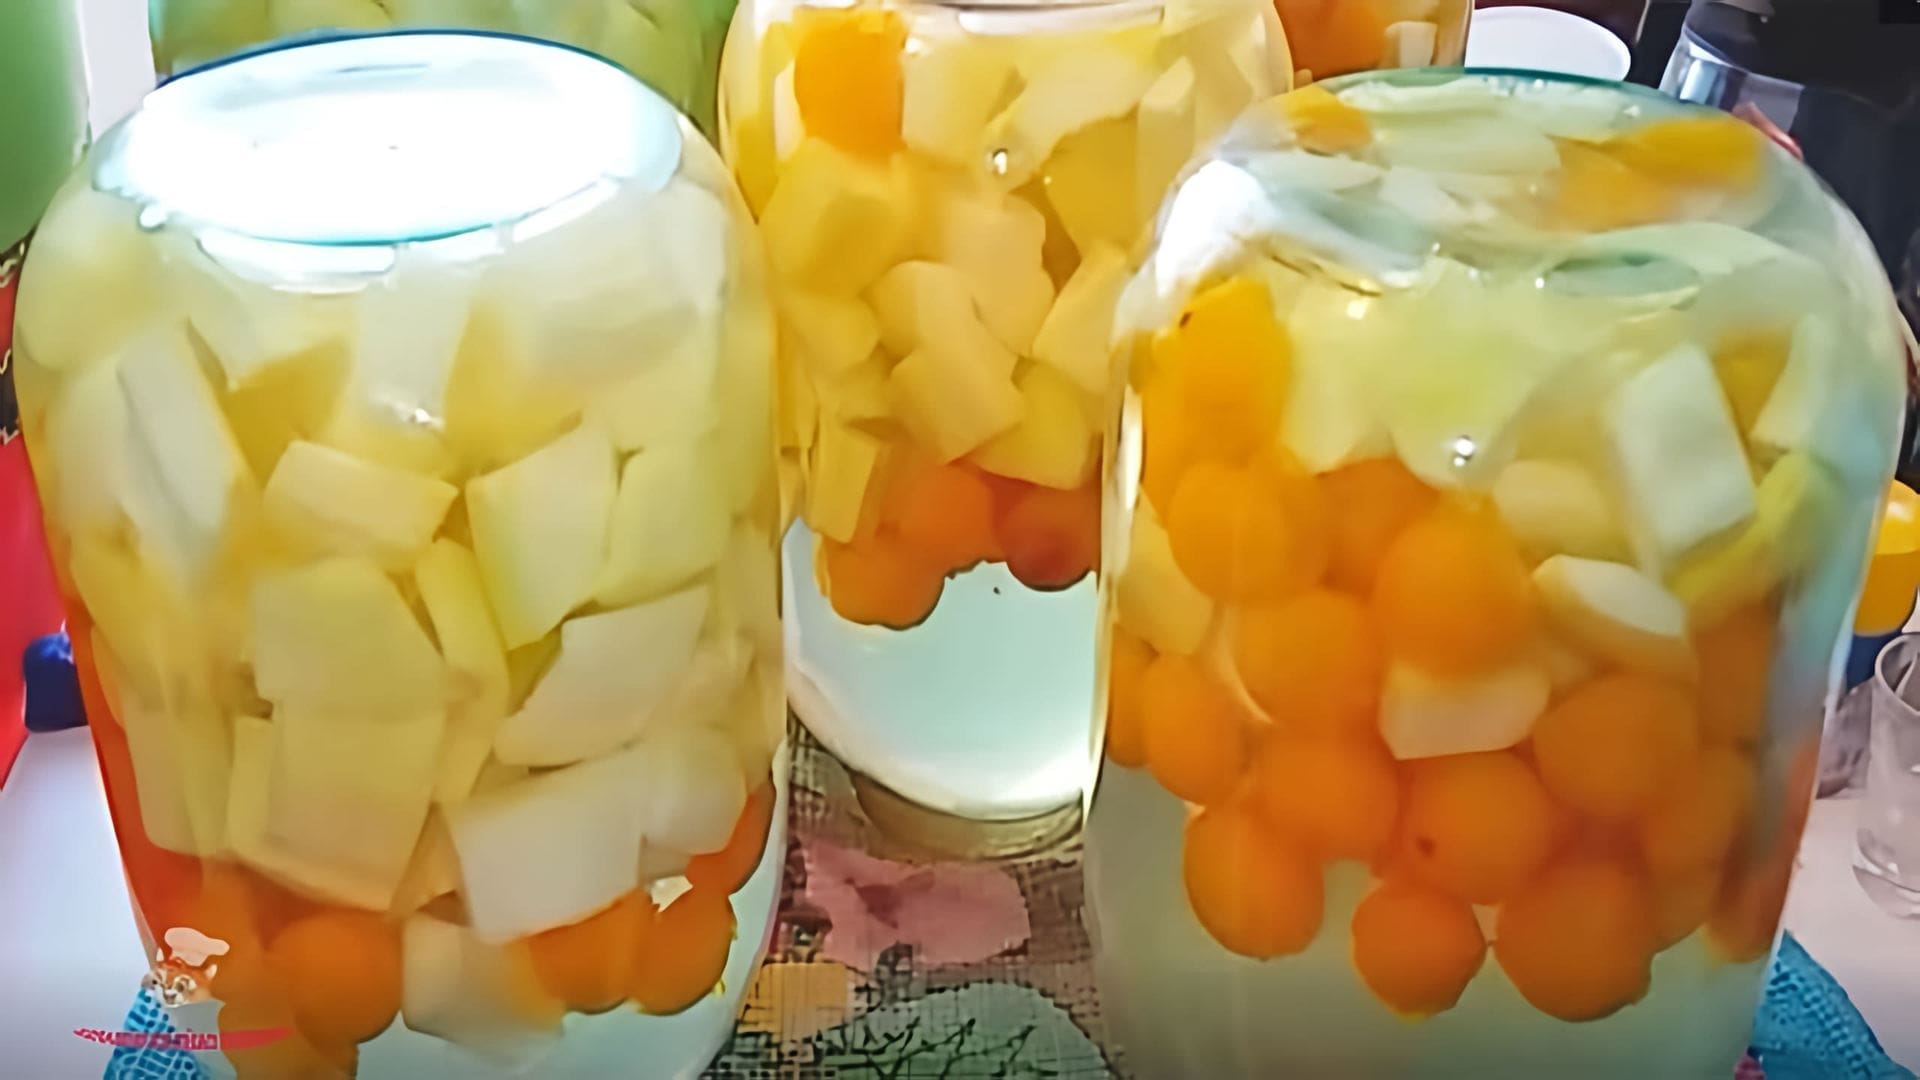 В этом видео демонстрируется процесс приготовления ананасного компота из кабачков и алычи